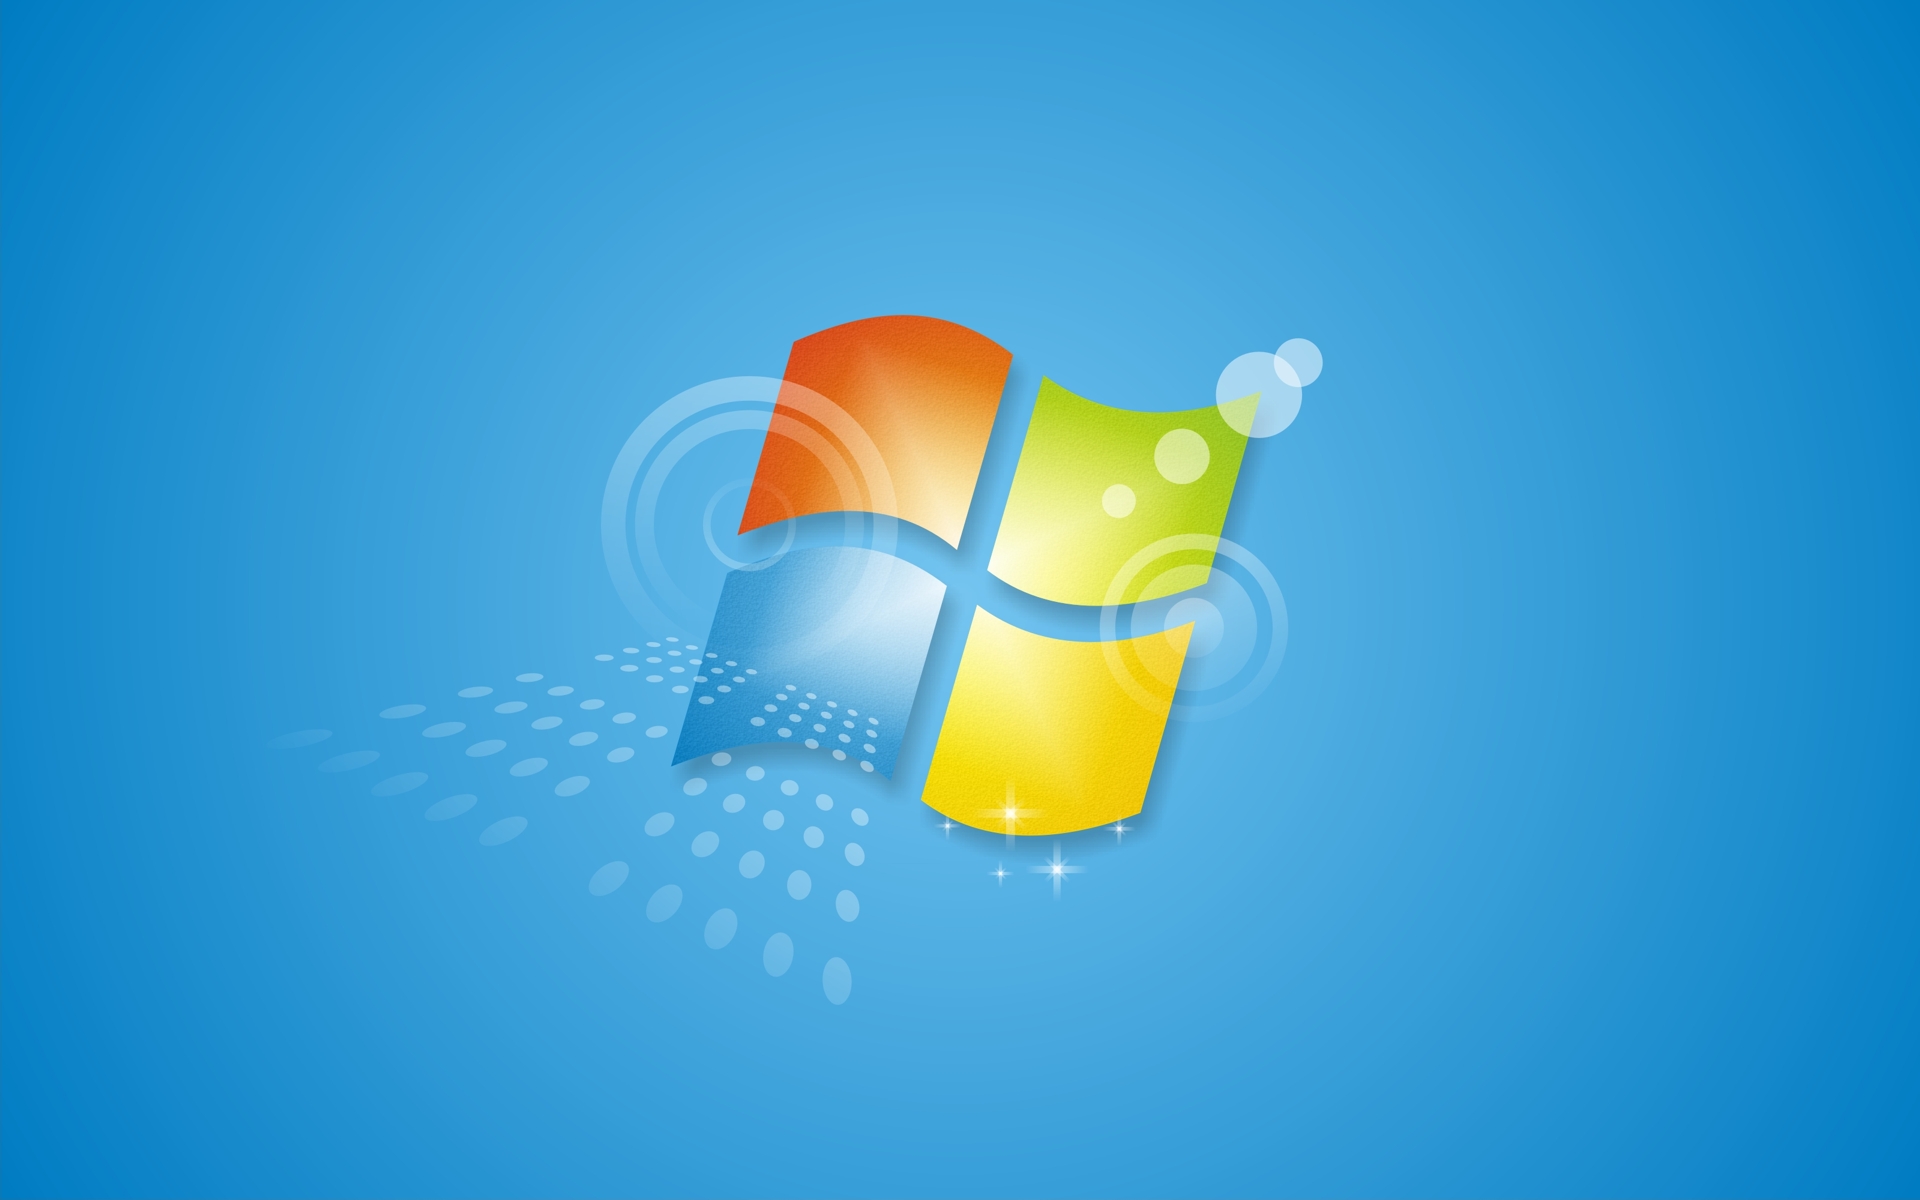 Windows 7 bez wsparcia od 15 stycznia. Czas na aktualizację